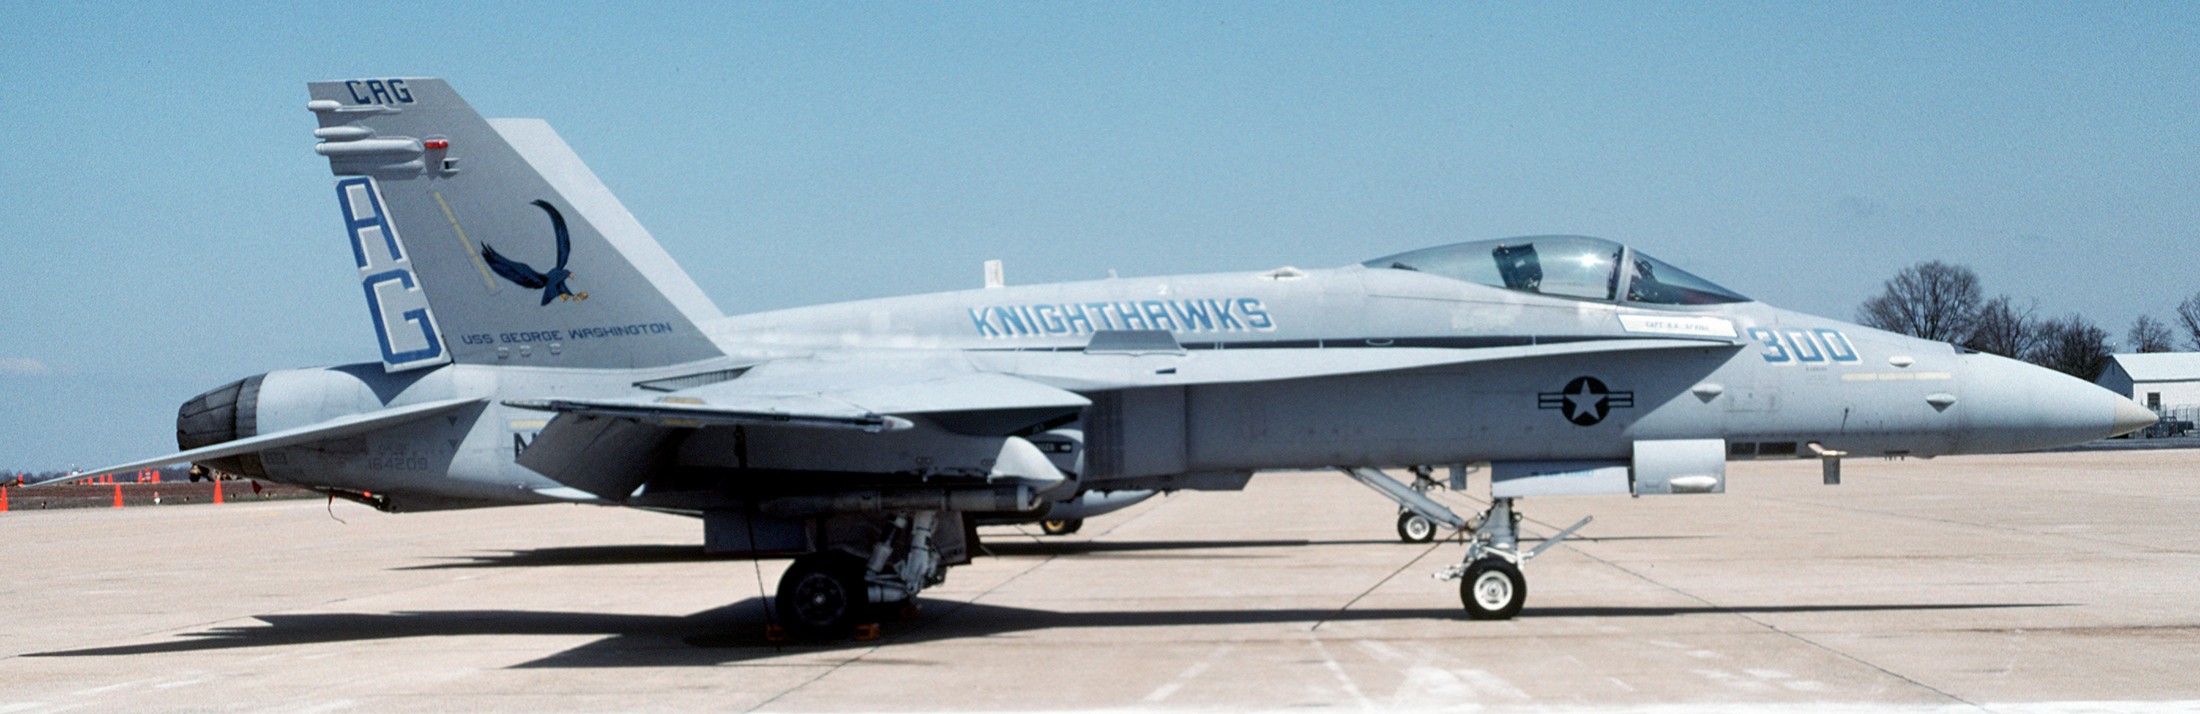 vfa-136 knighthawks strike fighter squadron f/a-18c hornet 1993 66 adrews naf afb maryland